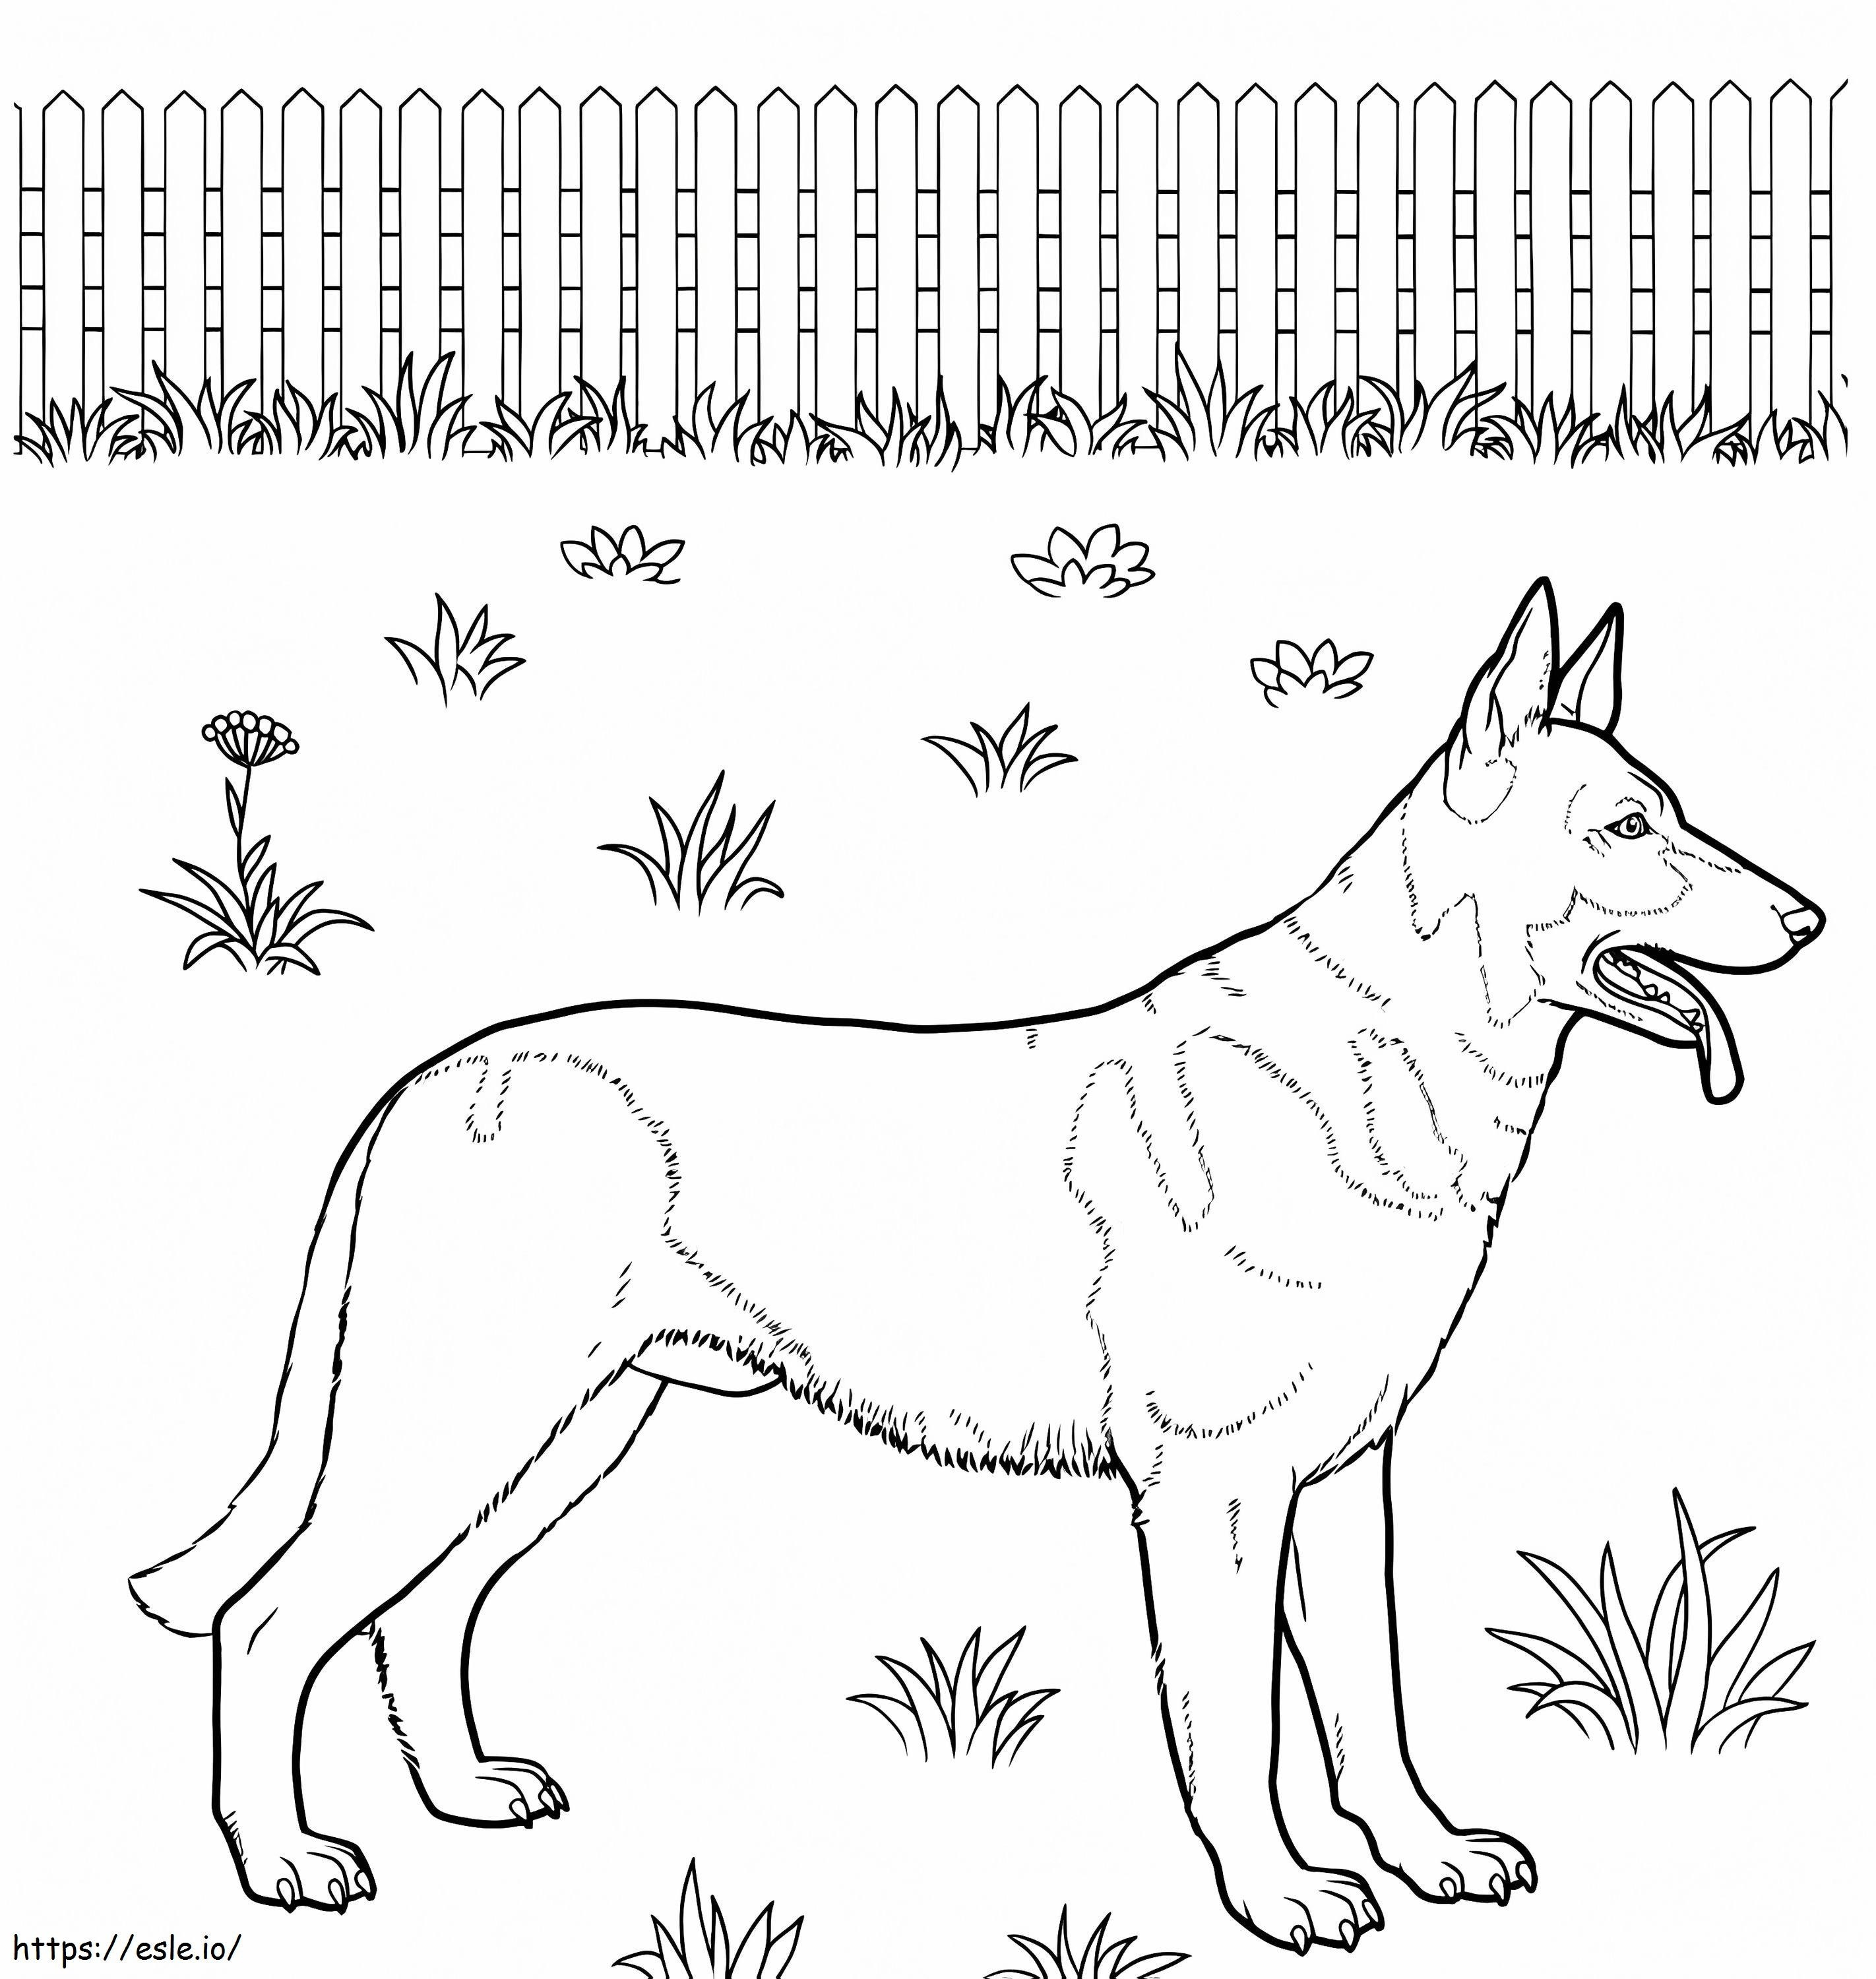 German Shepherd 1 coloring page